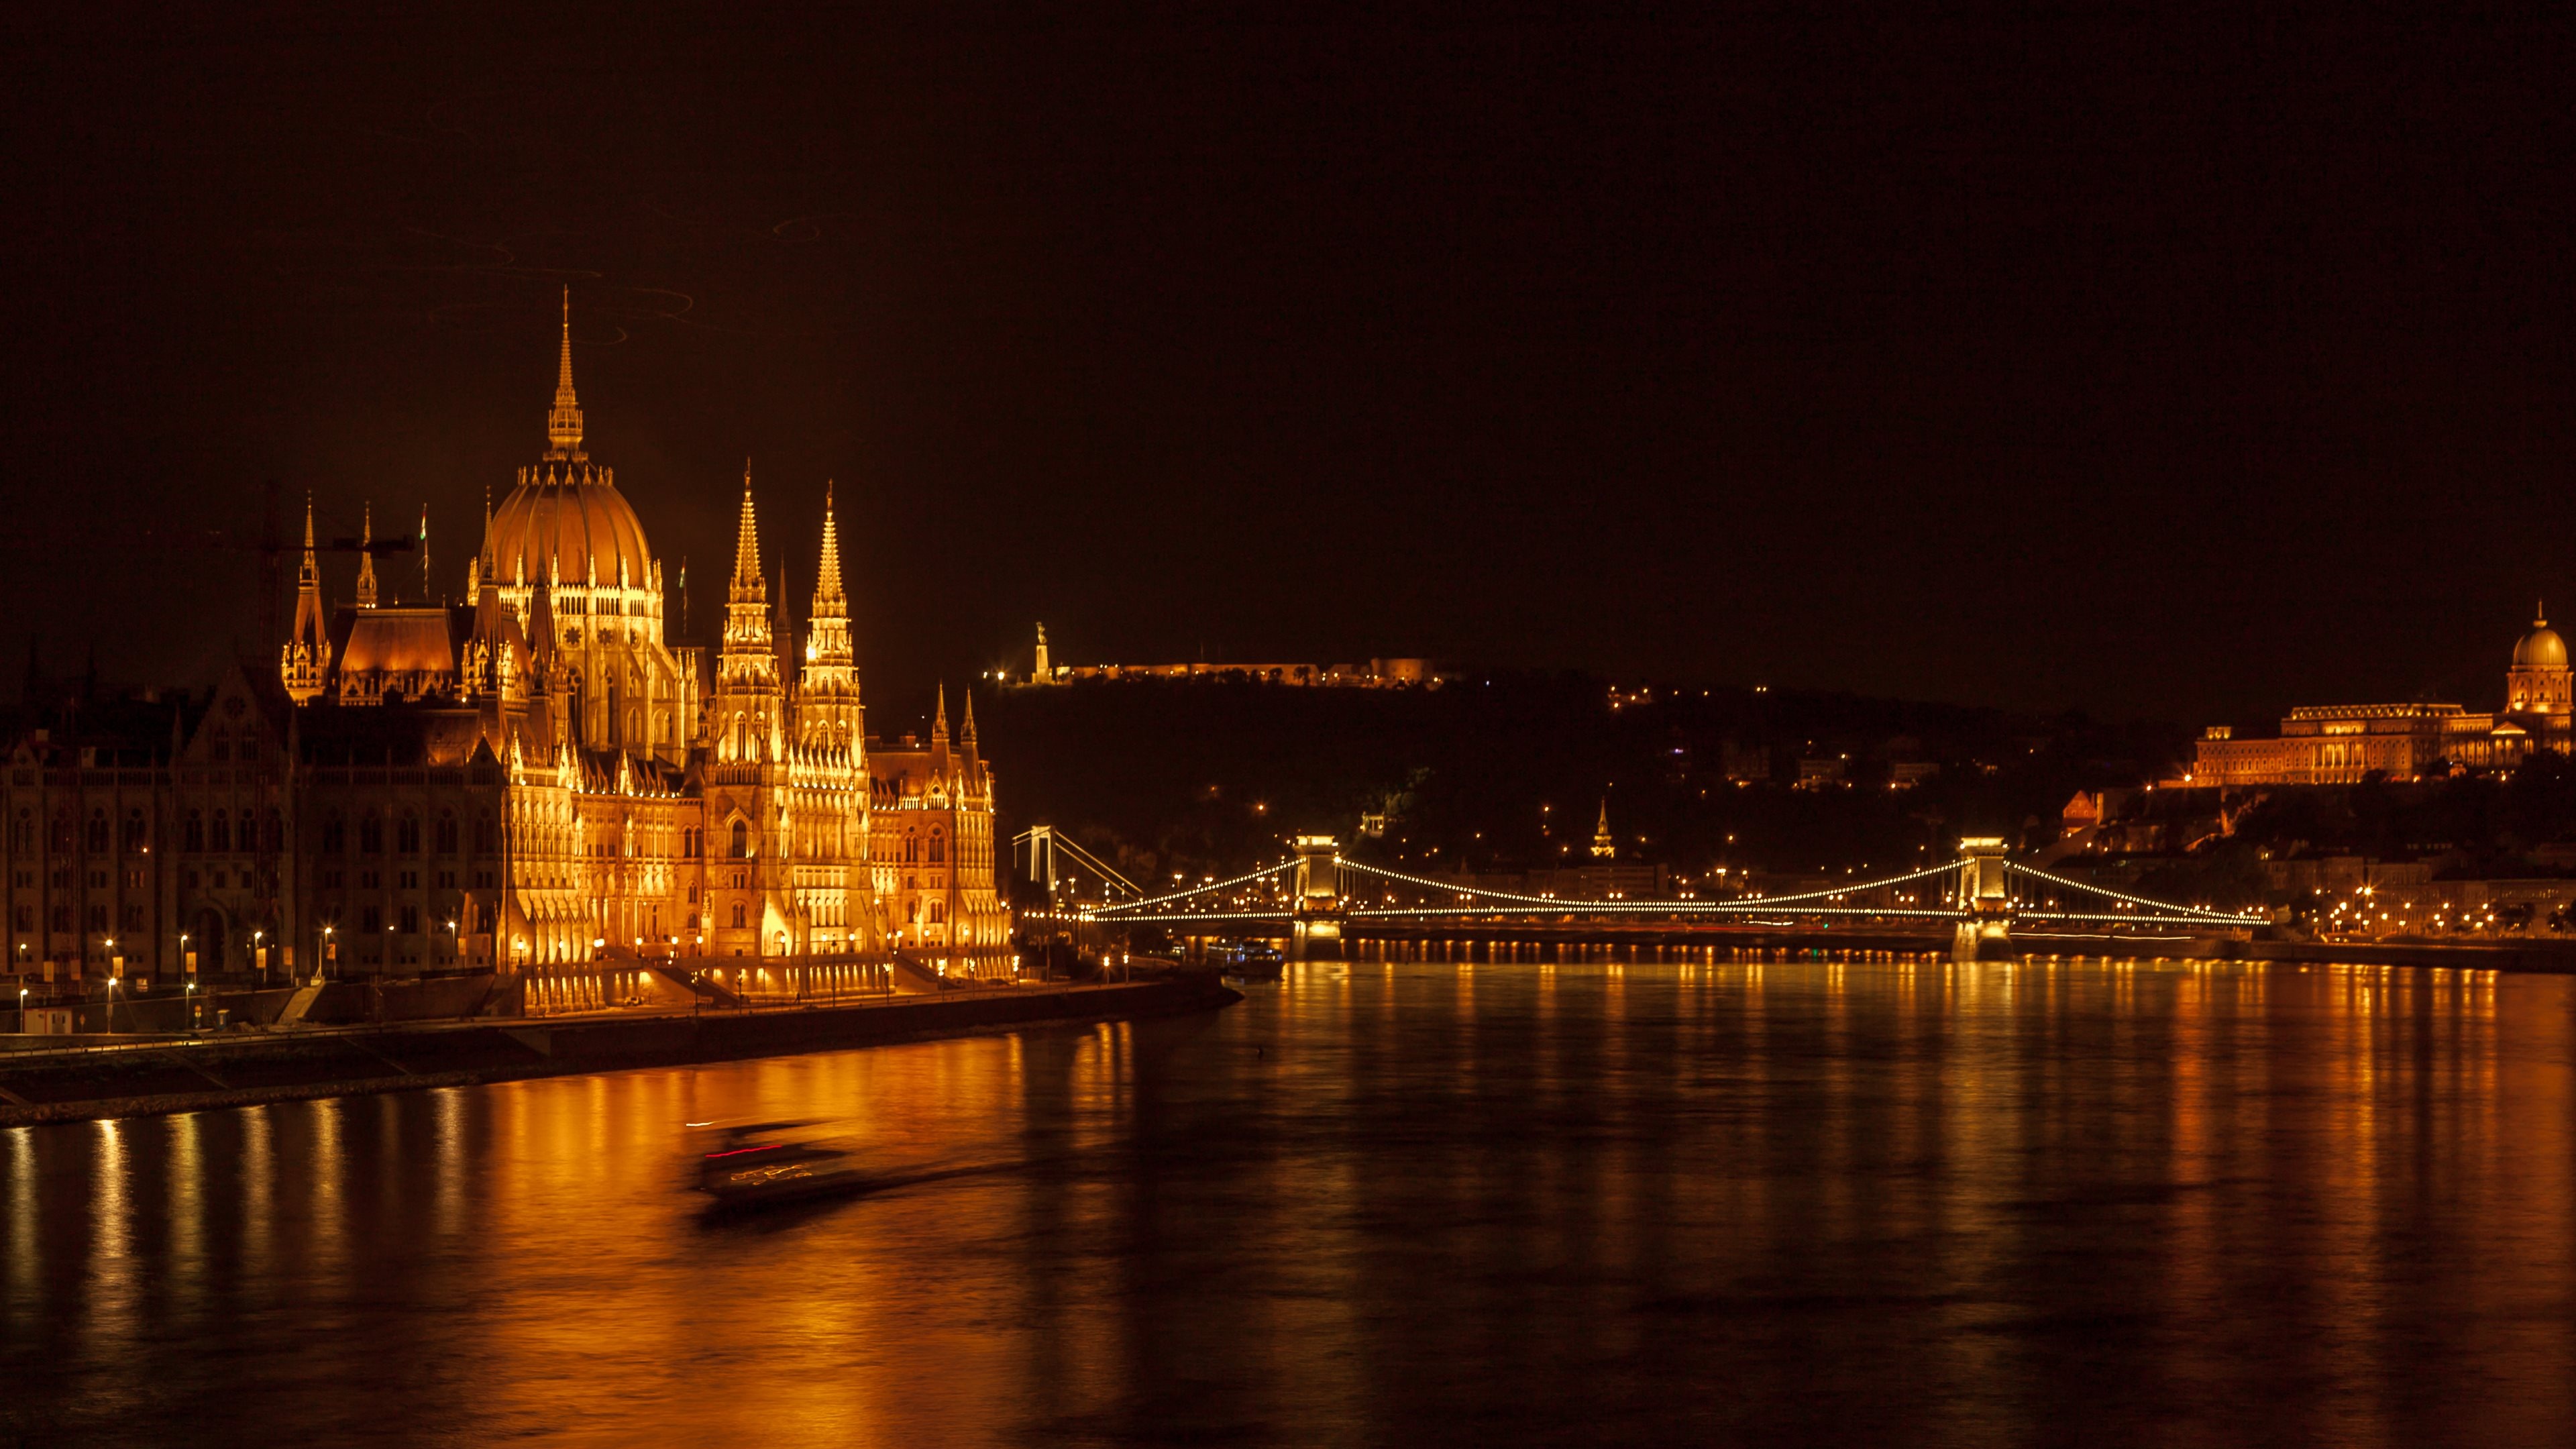 The Danube River, Travels, Night views of Hungarian Parliament, 3840x2160 4K Desktop